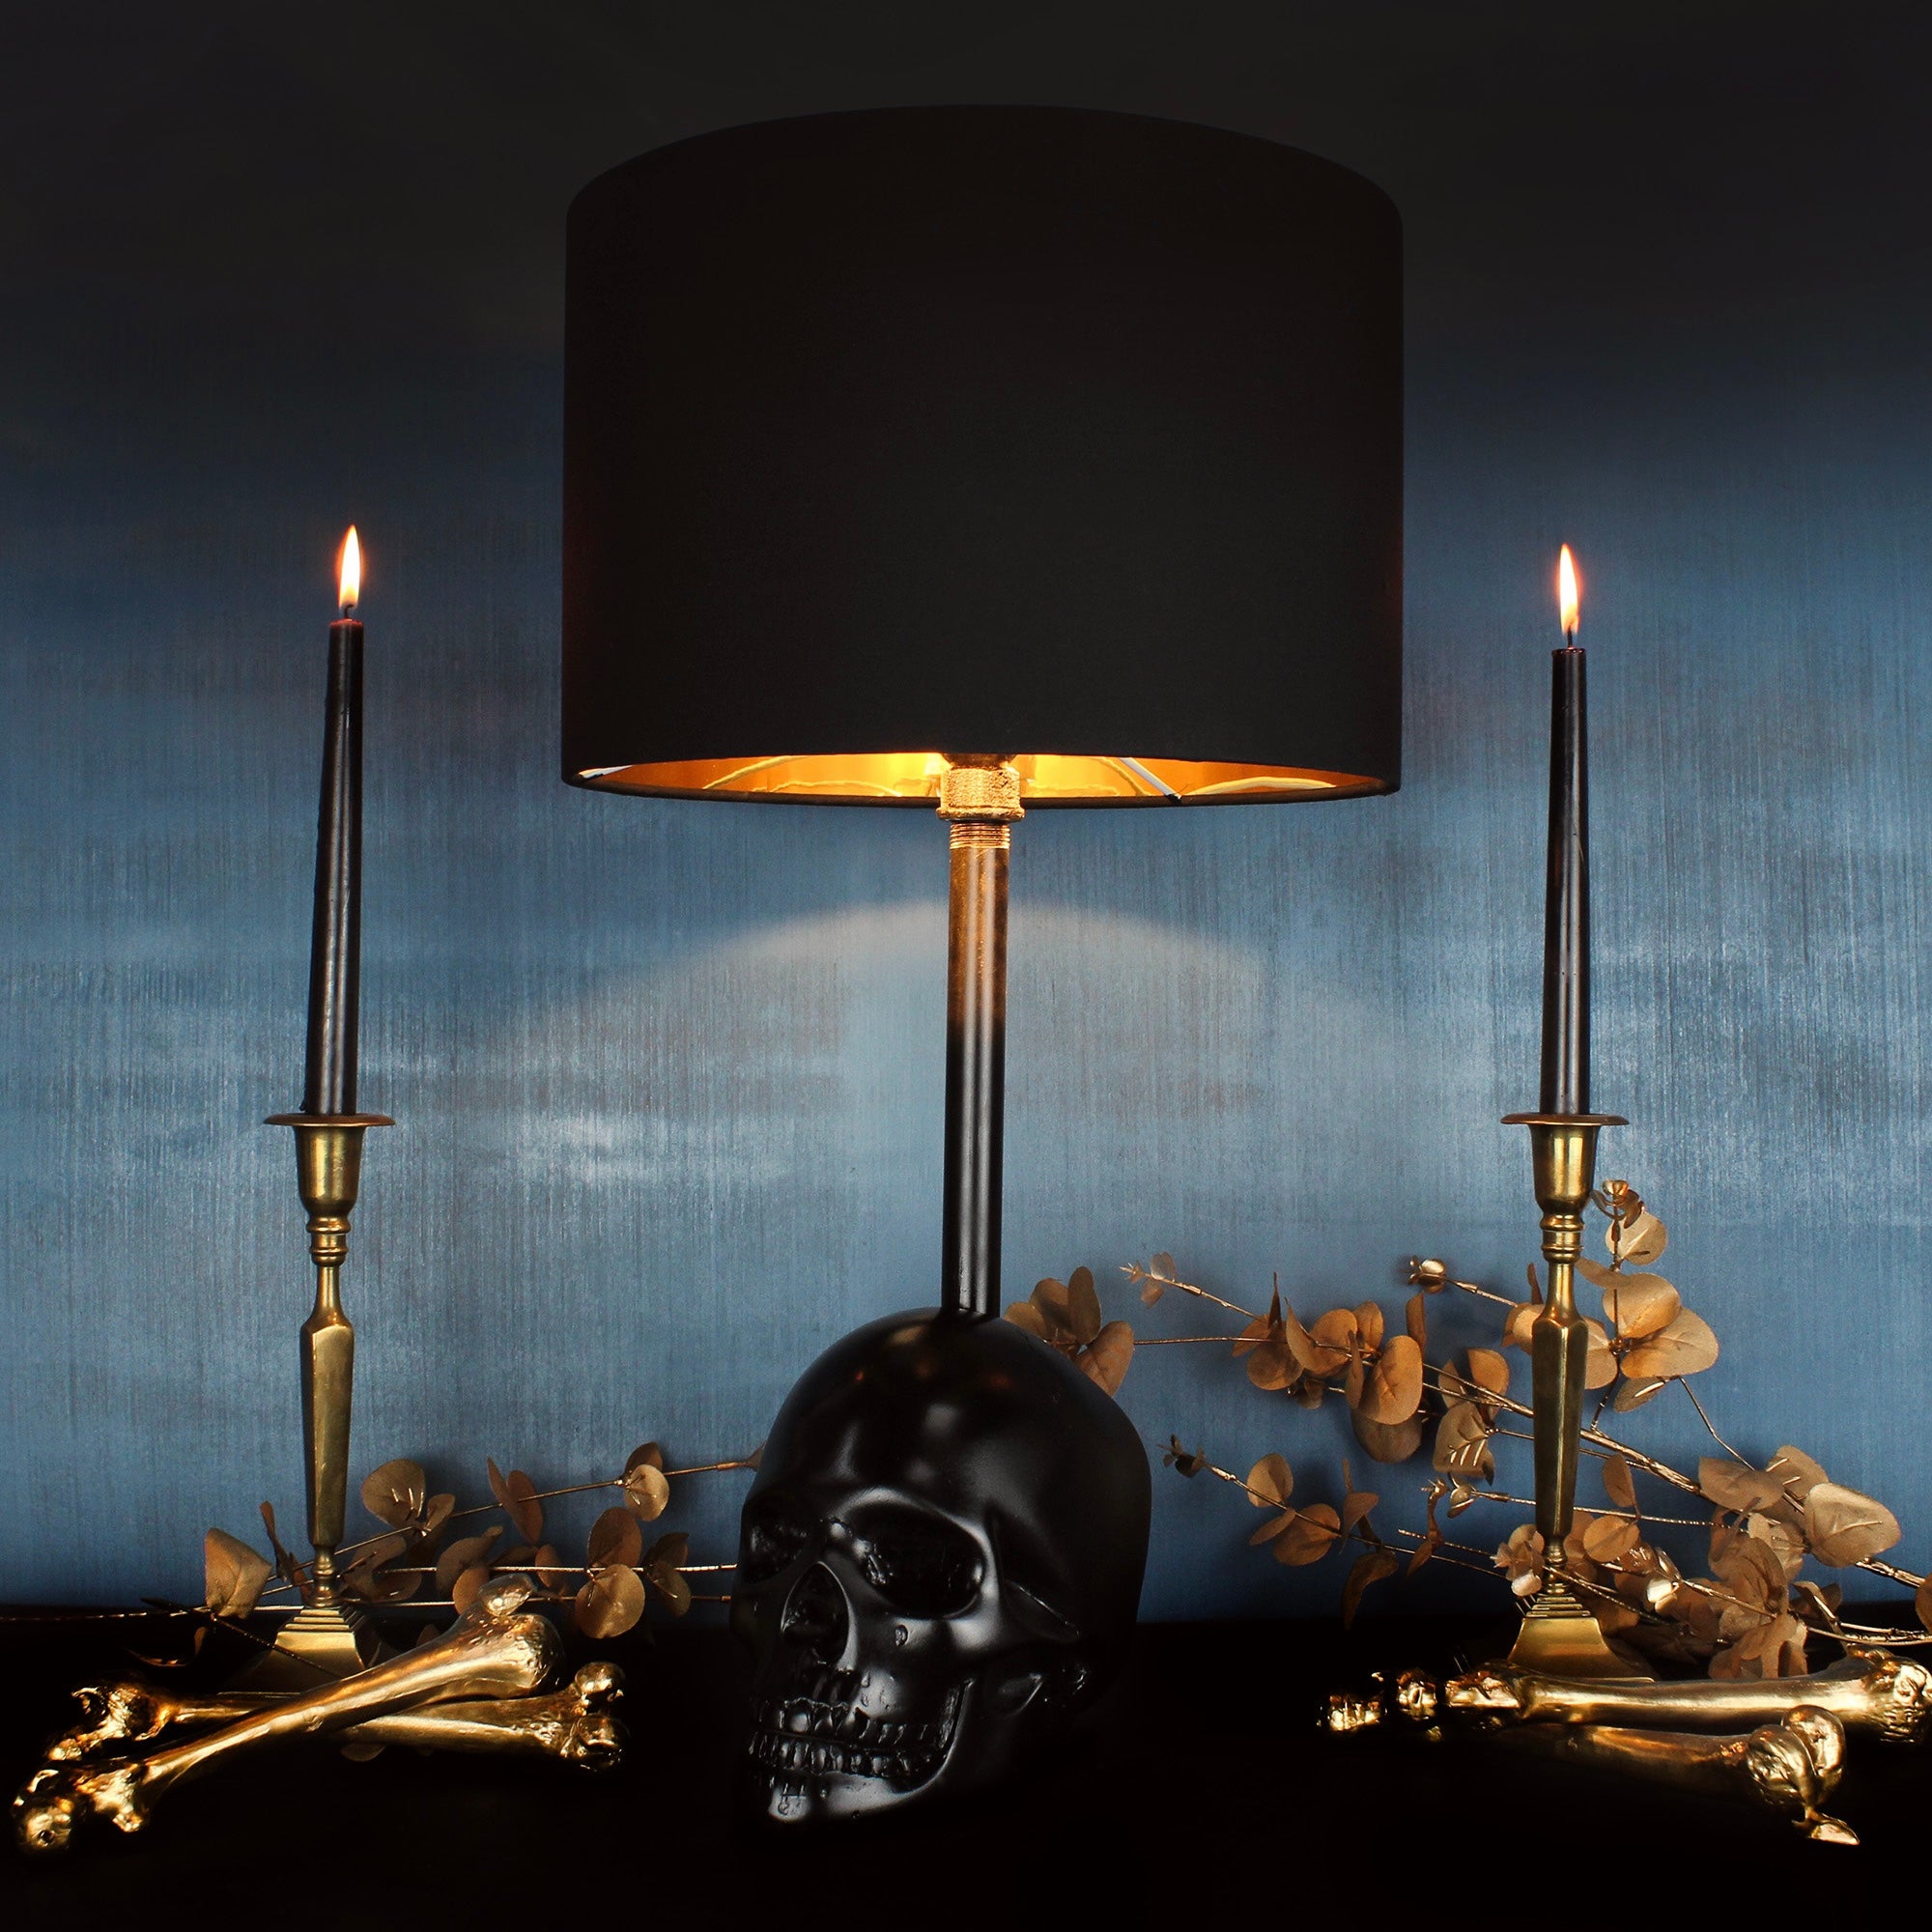 The Edison Skull Lamp